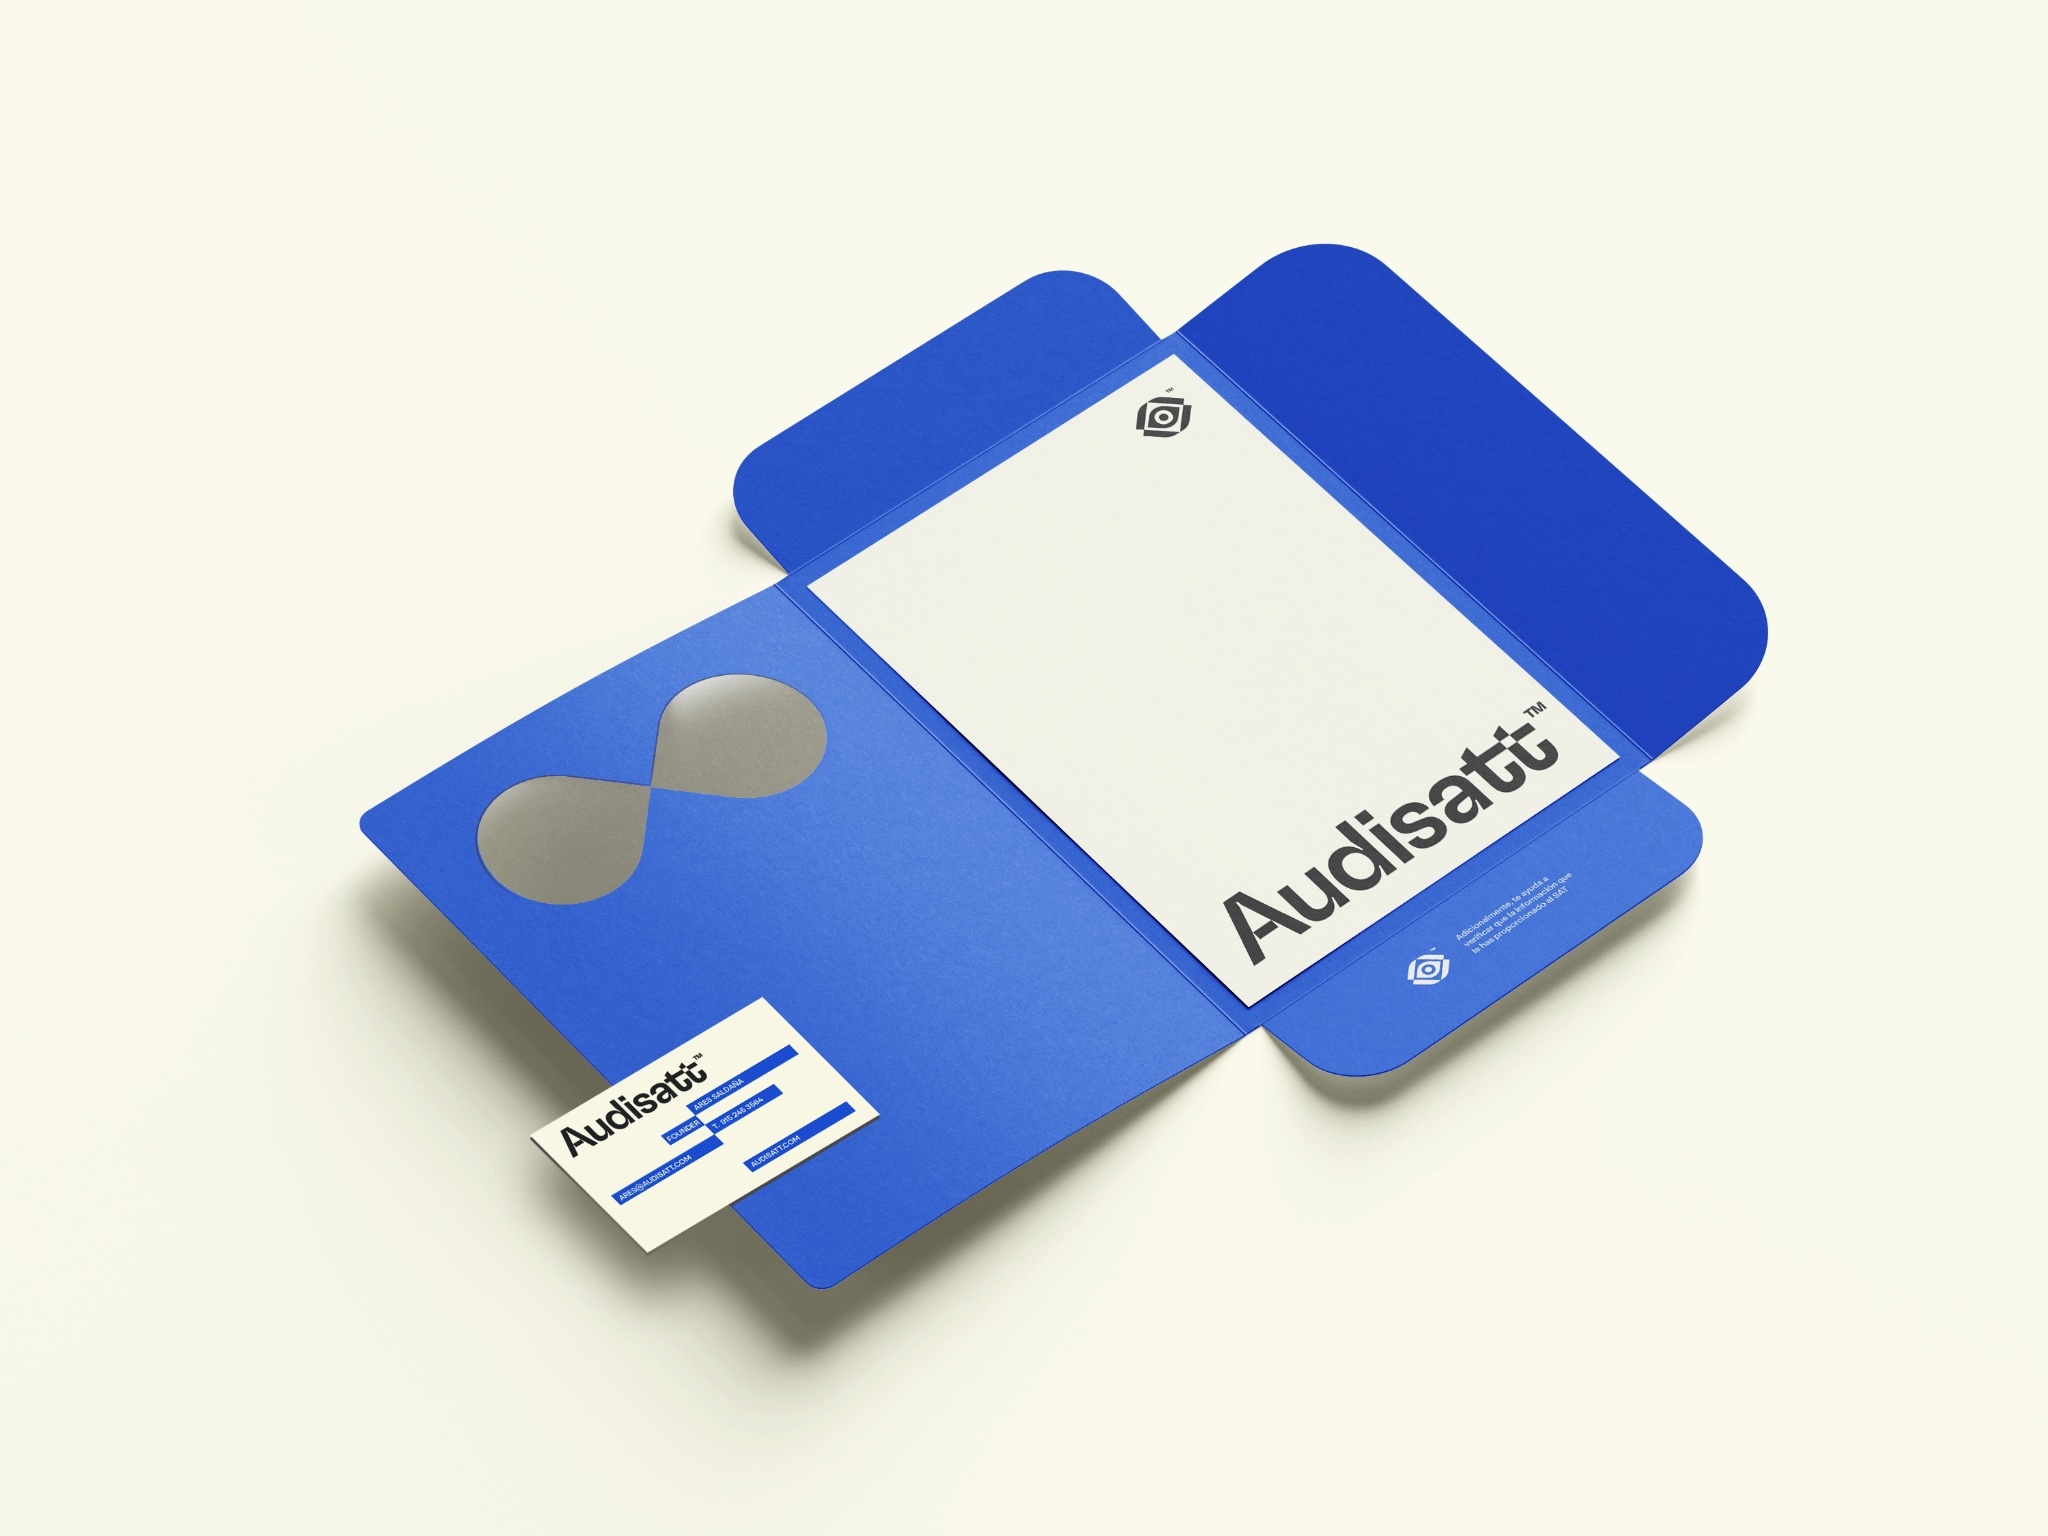 Audisatt Branding Portfolio: Folder Design by Phidev